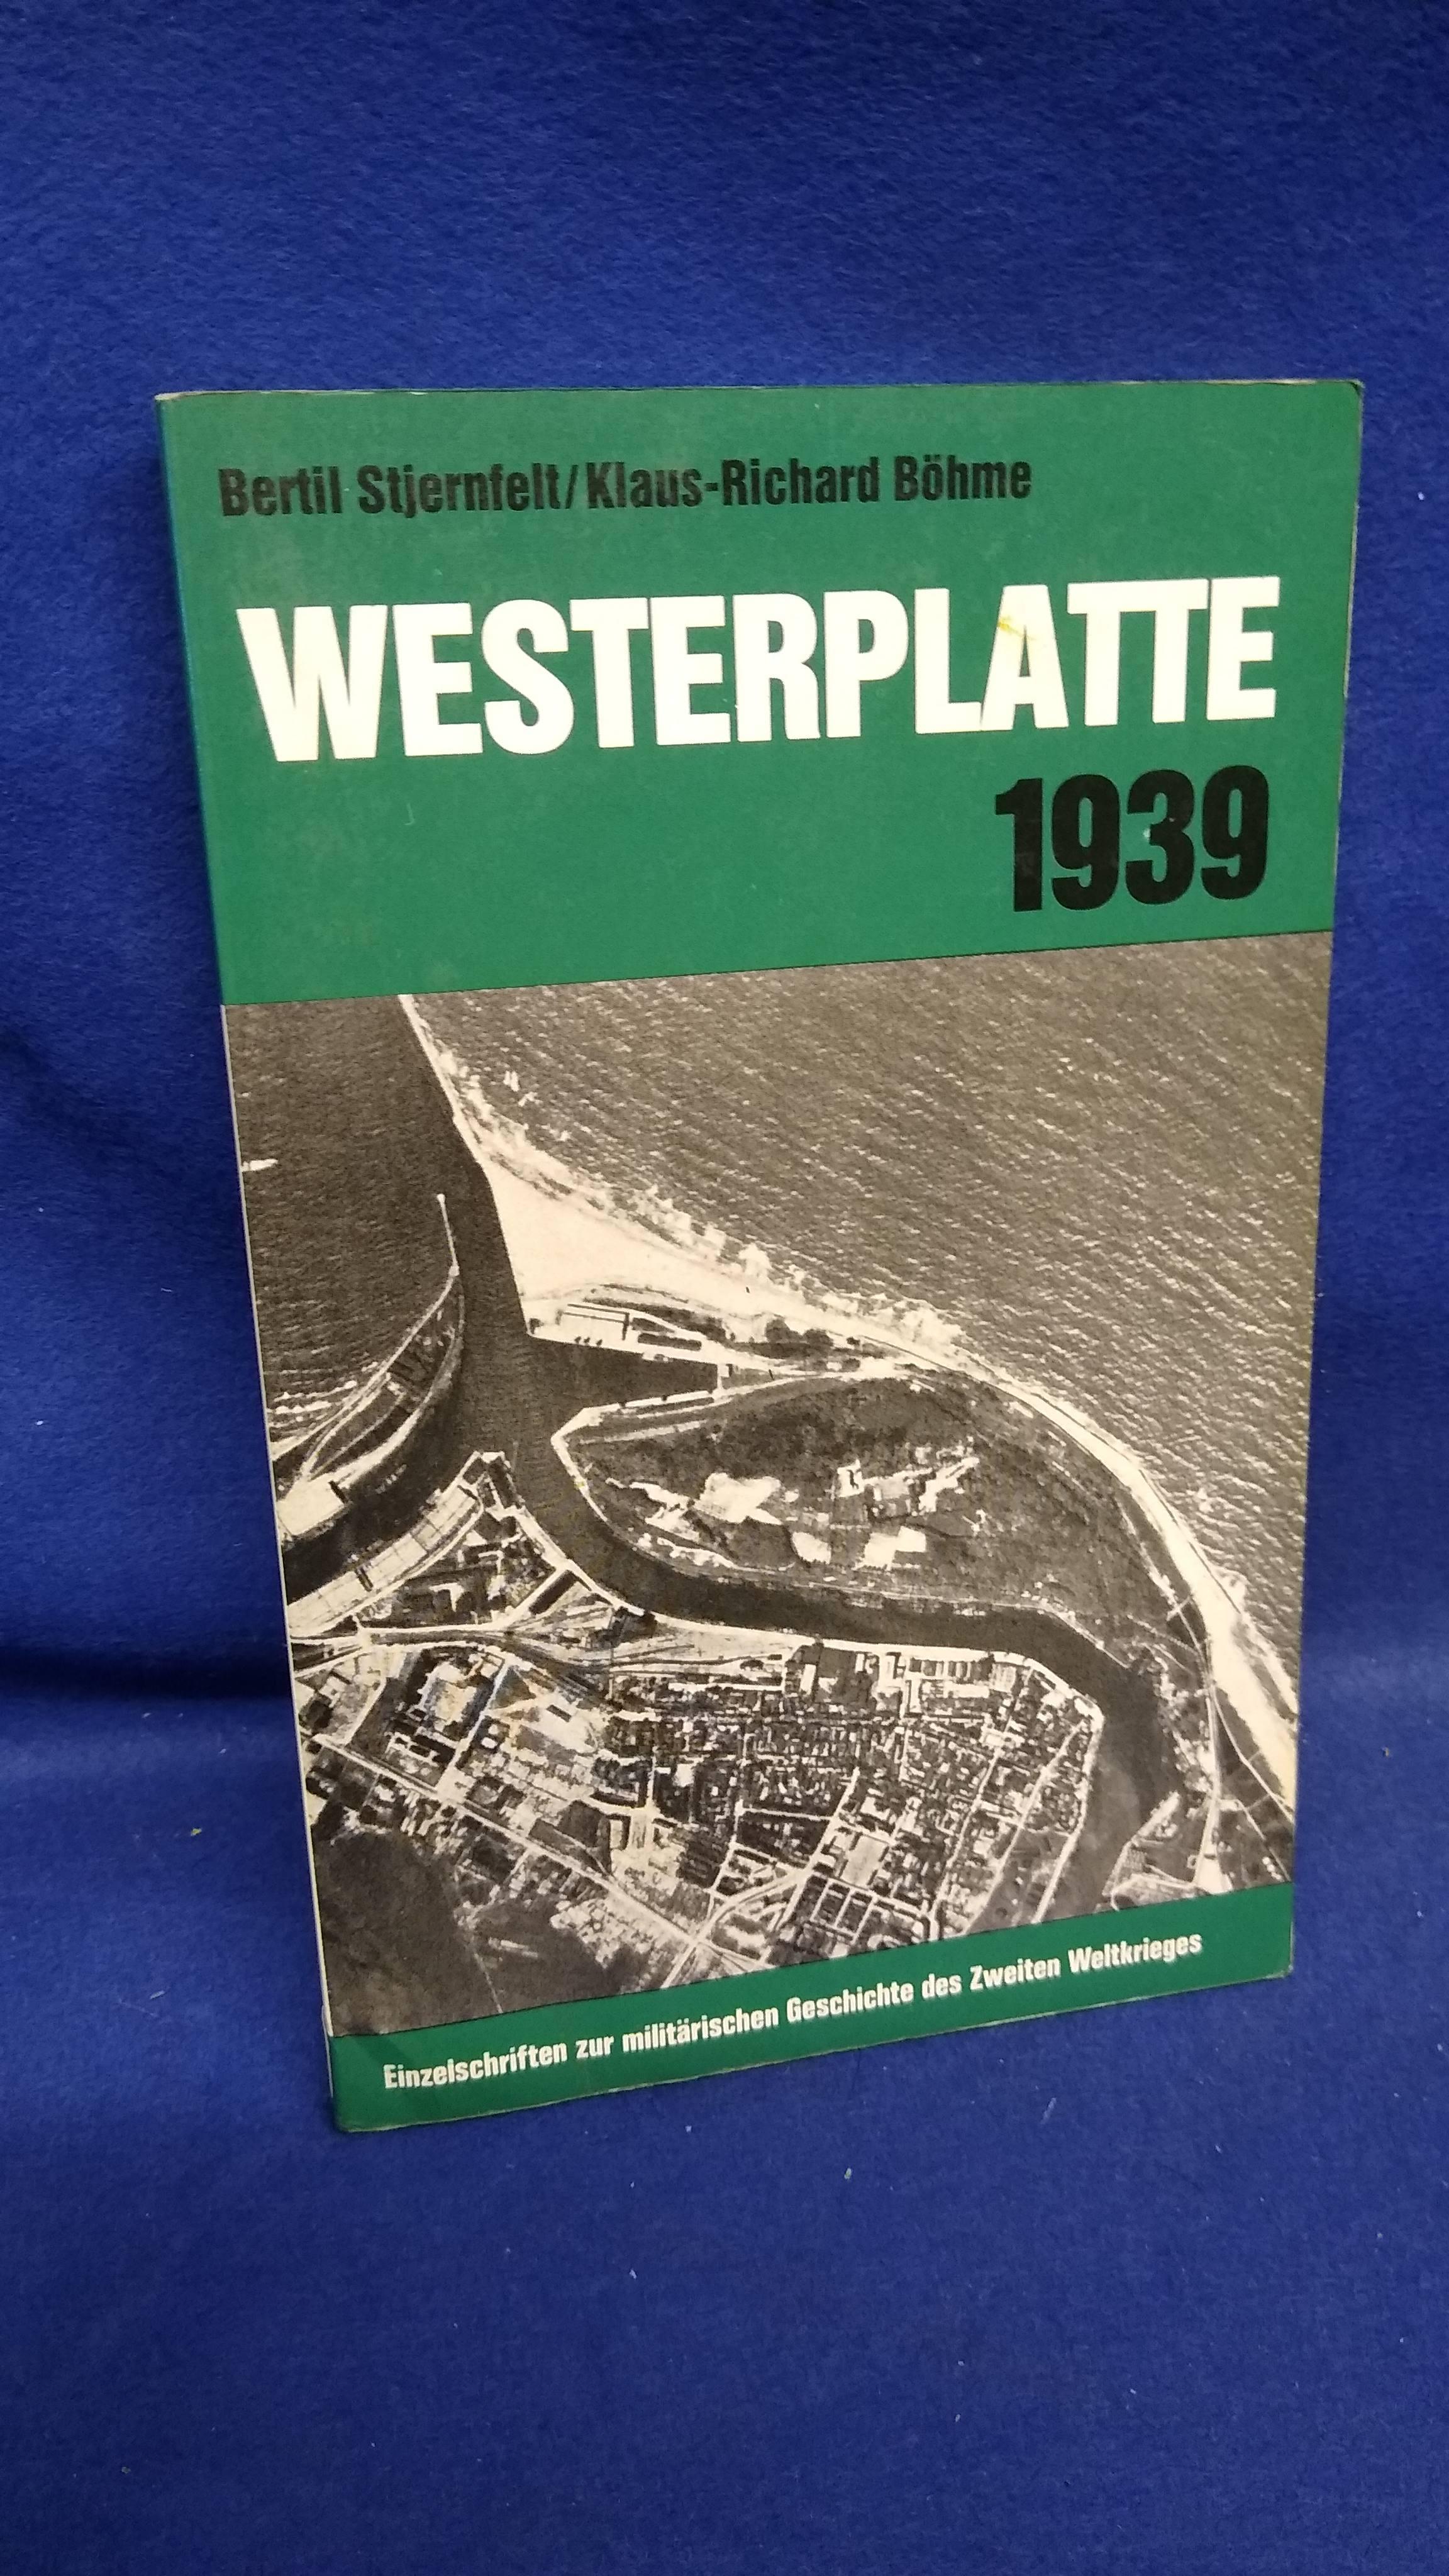 Einzelschriften zur militärischen Geschichte des 2. Weltkrieges, Band 23: Westernplatte 1939